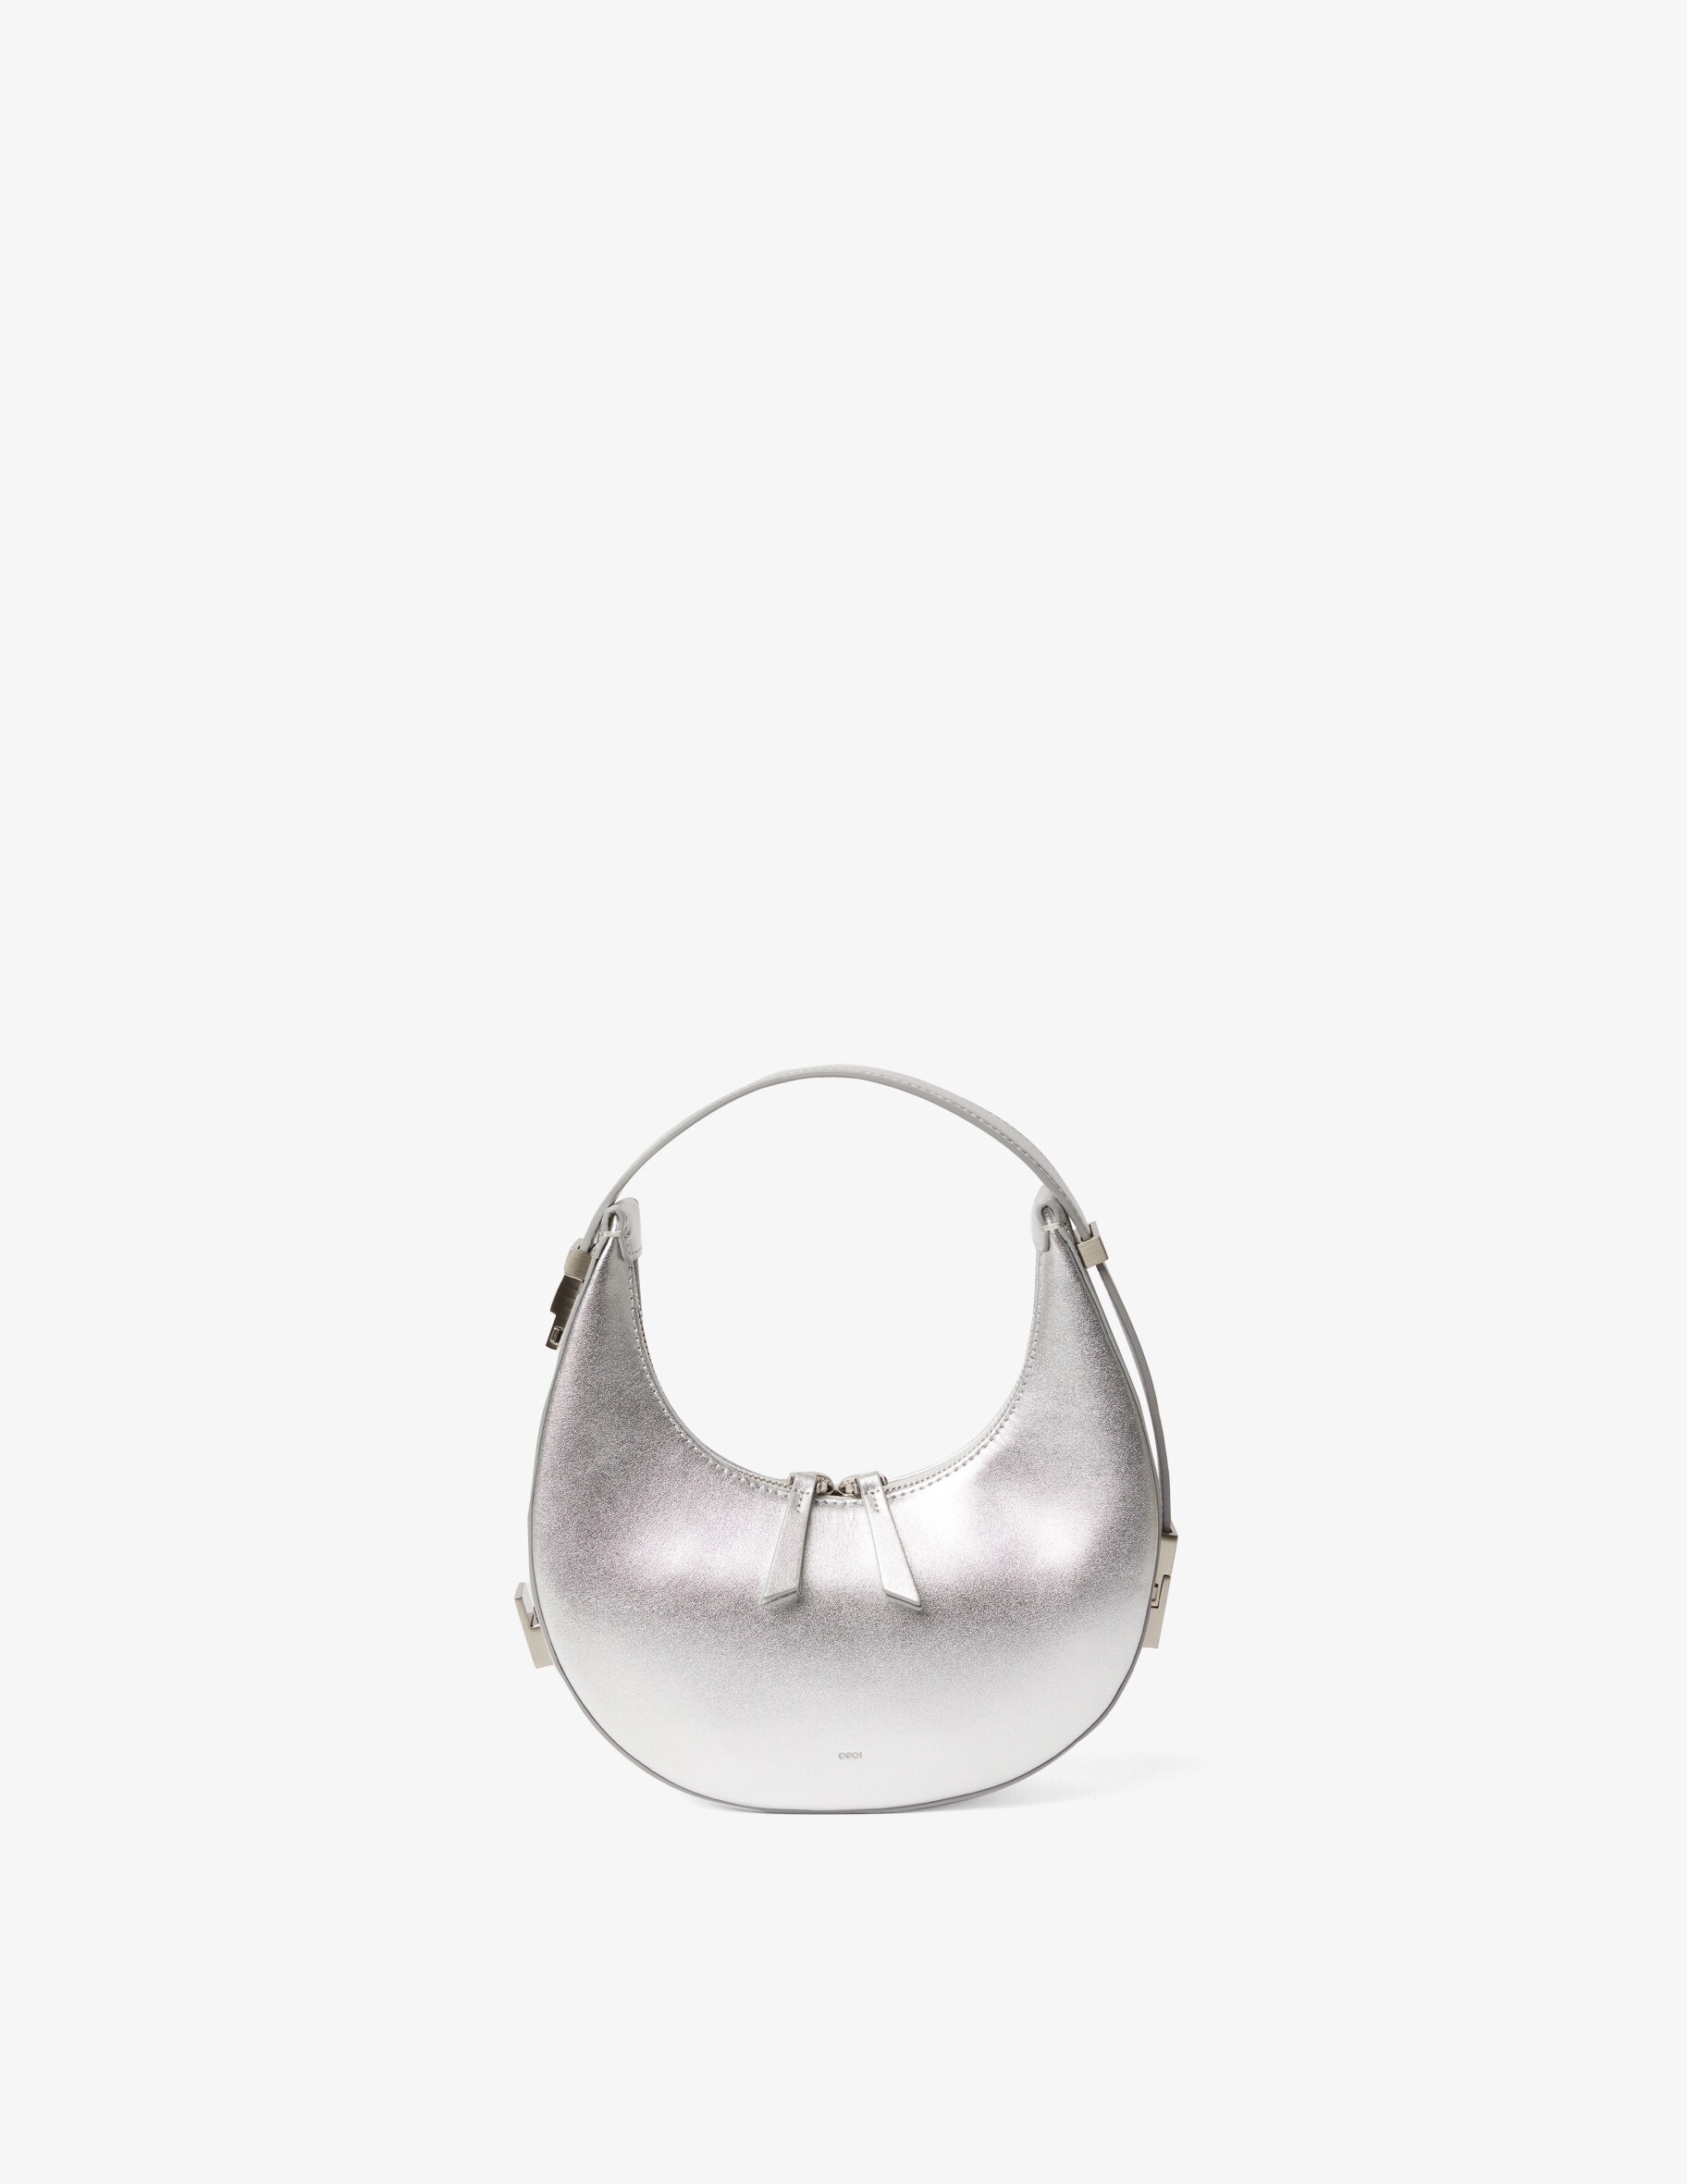 Мини-сумка Toni в форме полумесяца OSOI, серебряный